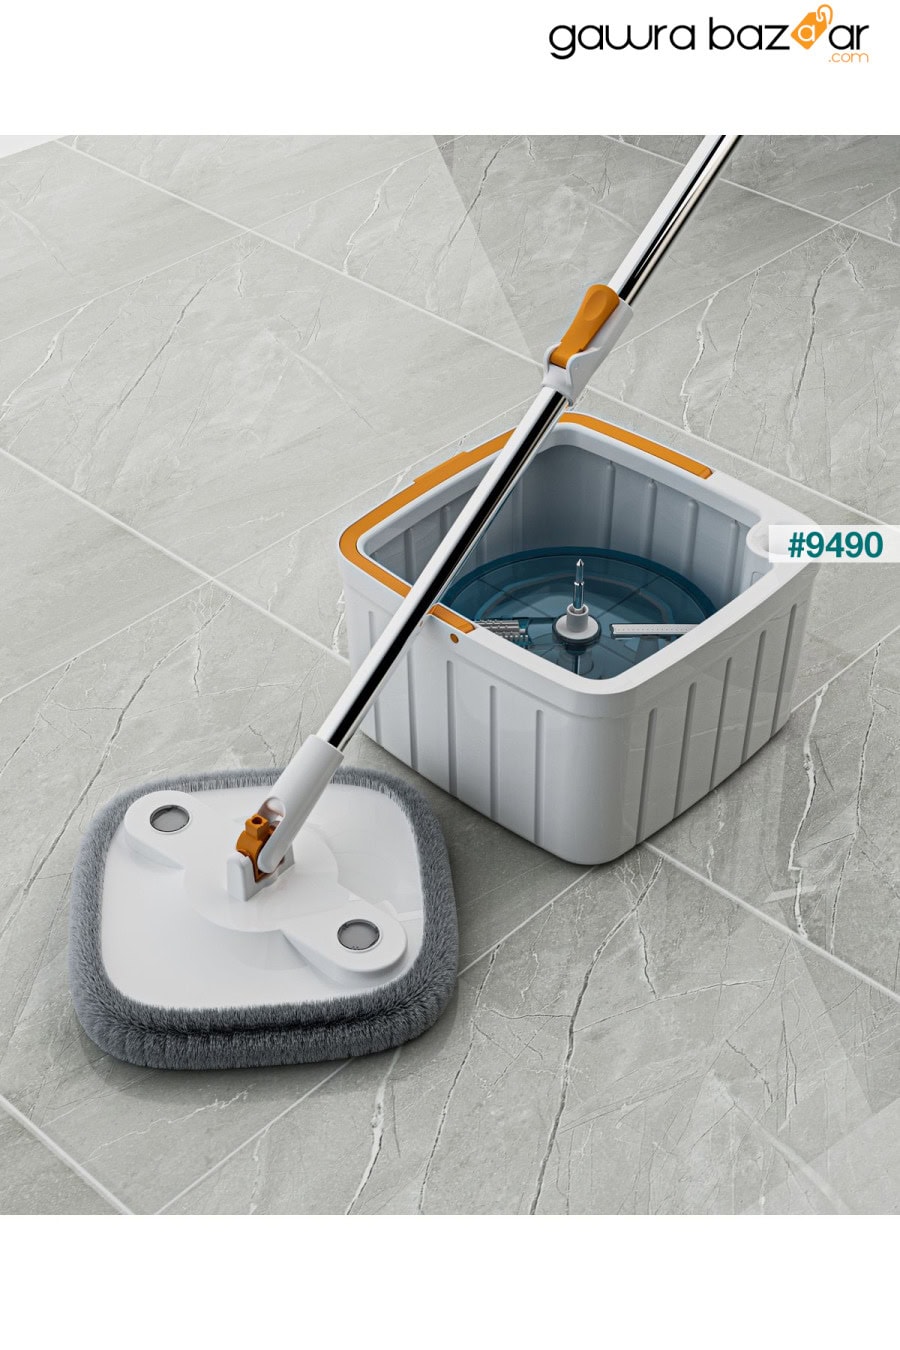 مجموعة ممسحة للتنظيف الأوتوماتيكي مع ممسحة احتياطية لفصل المياه النظيفة والمتسخة، رأس مربع بتصميم متجدد Miomi 1